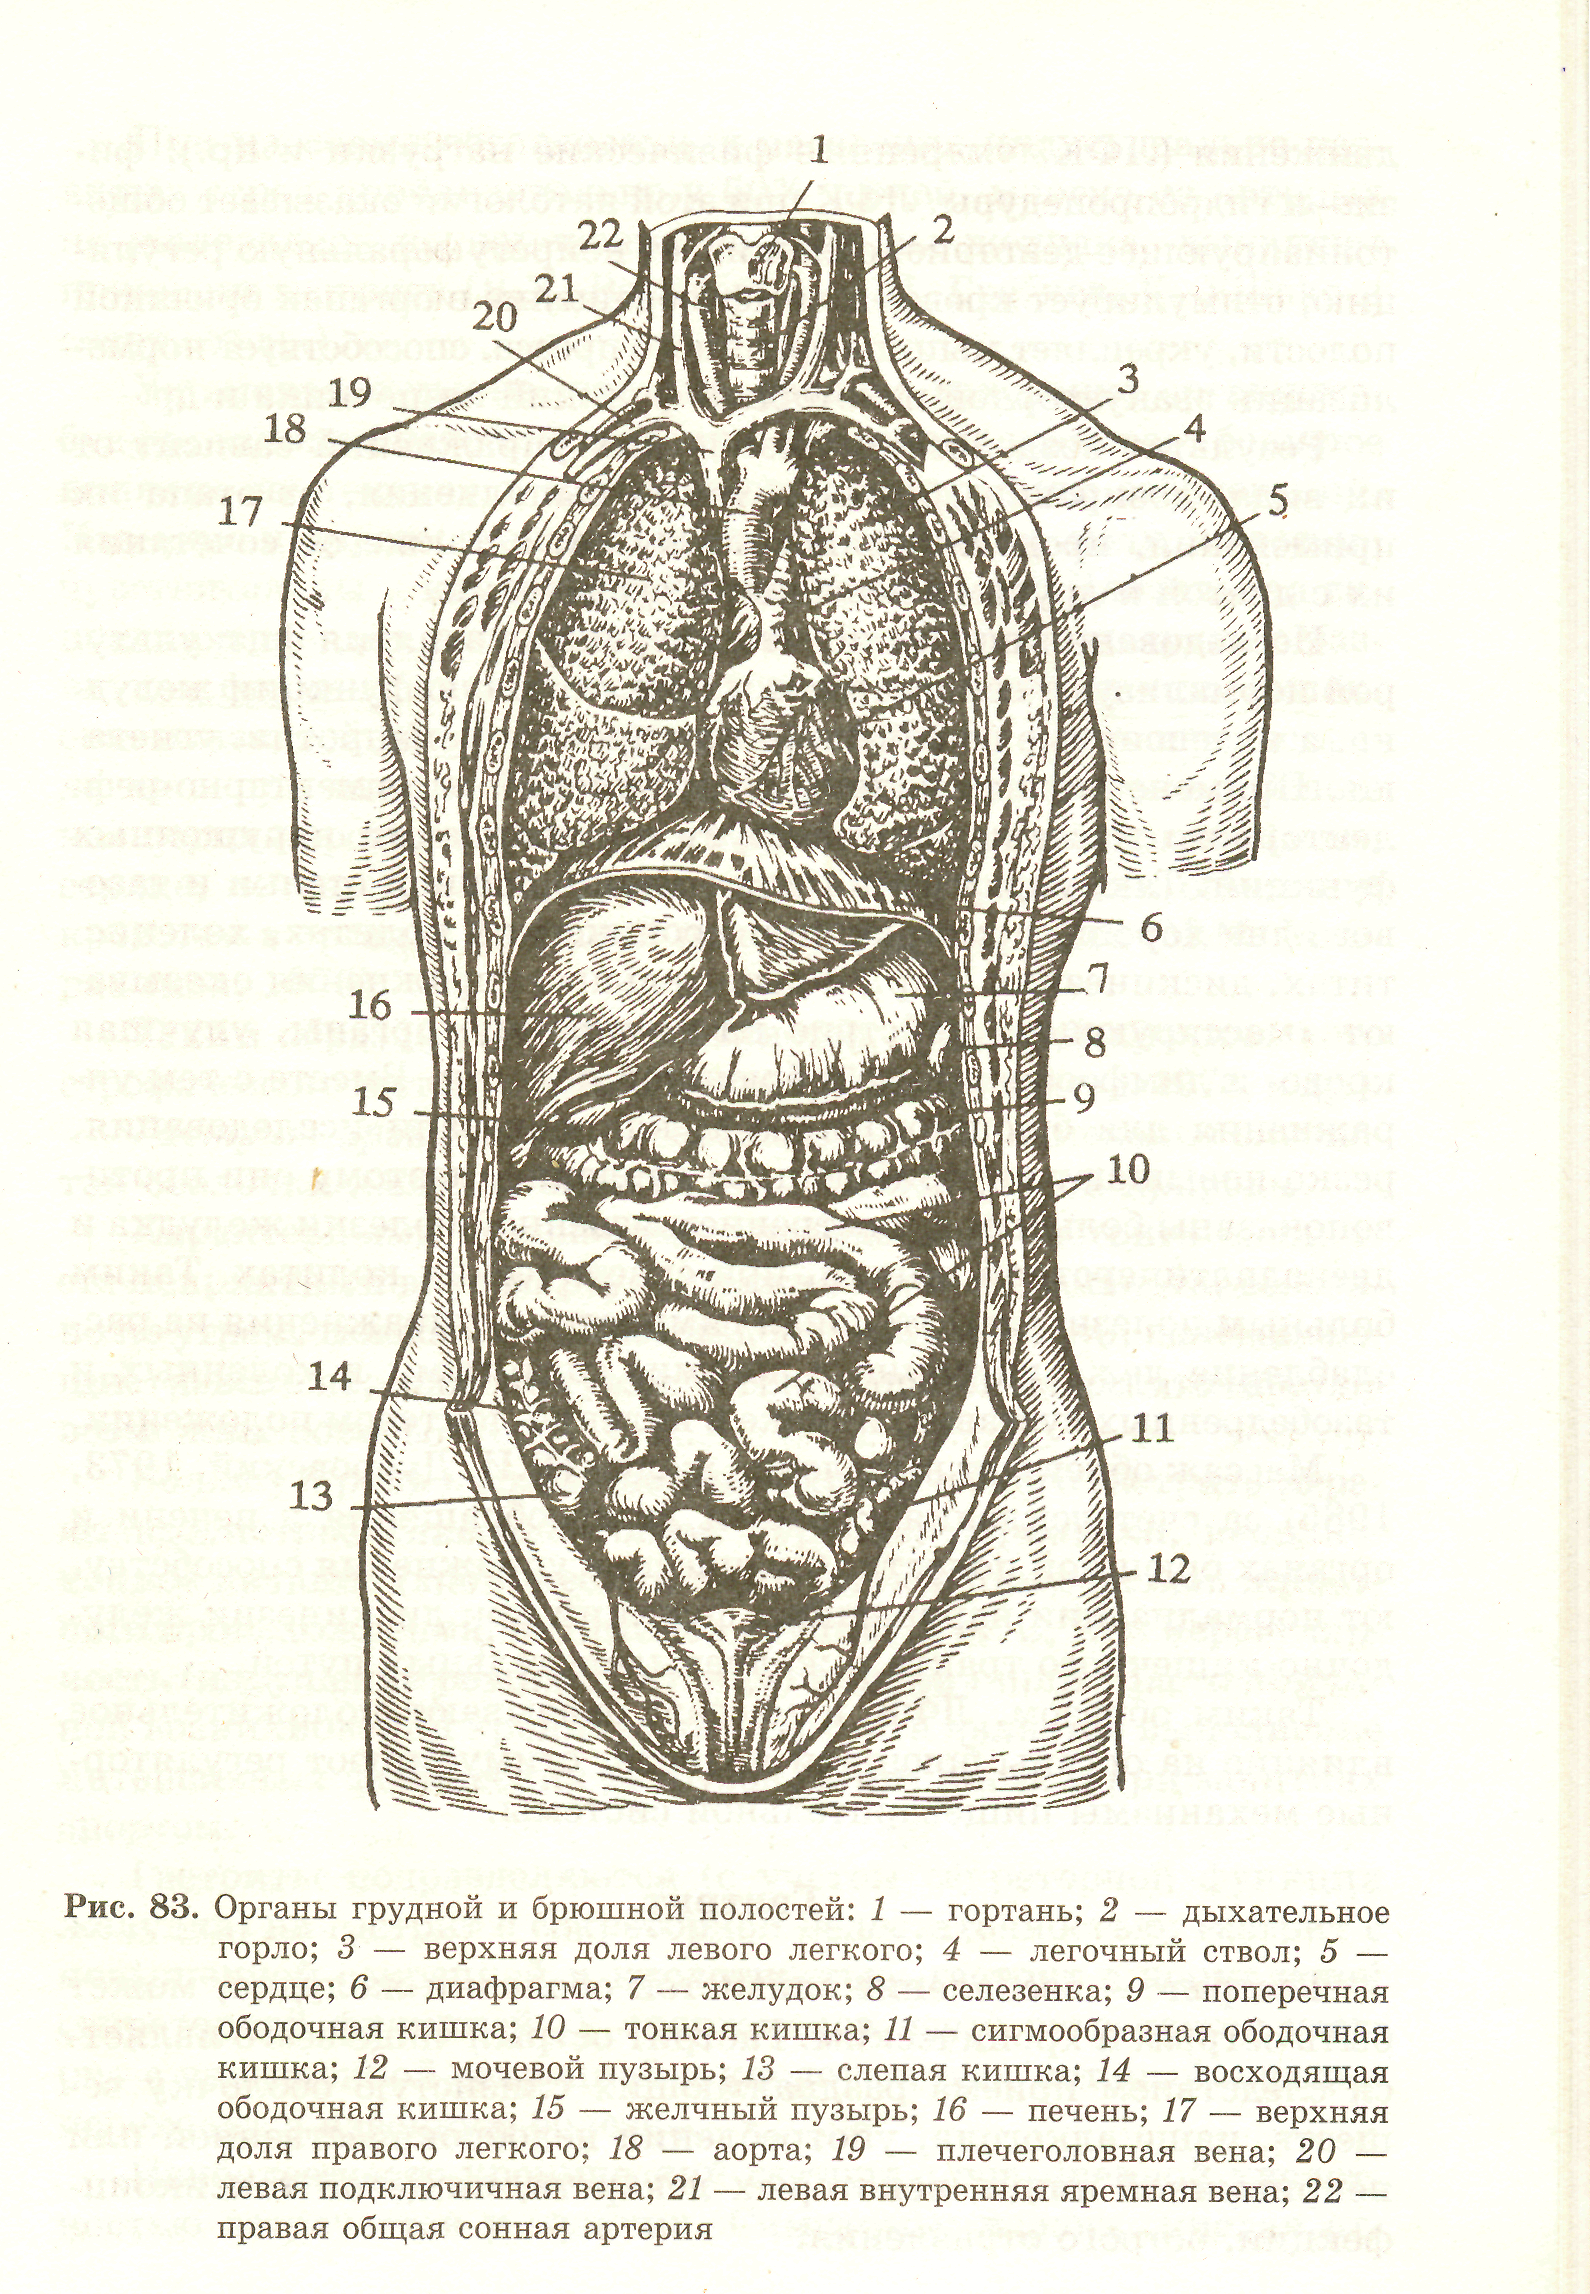 Как расположены органы брюшной полости у человека фото с описанием